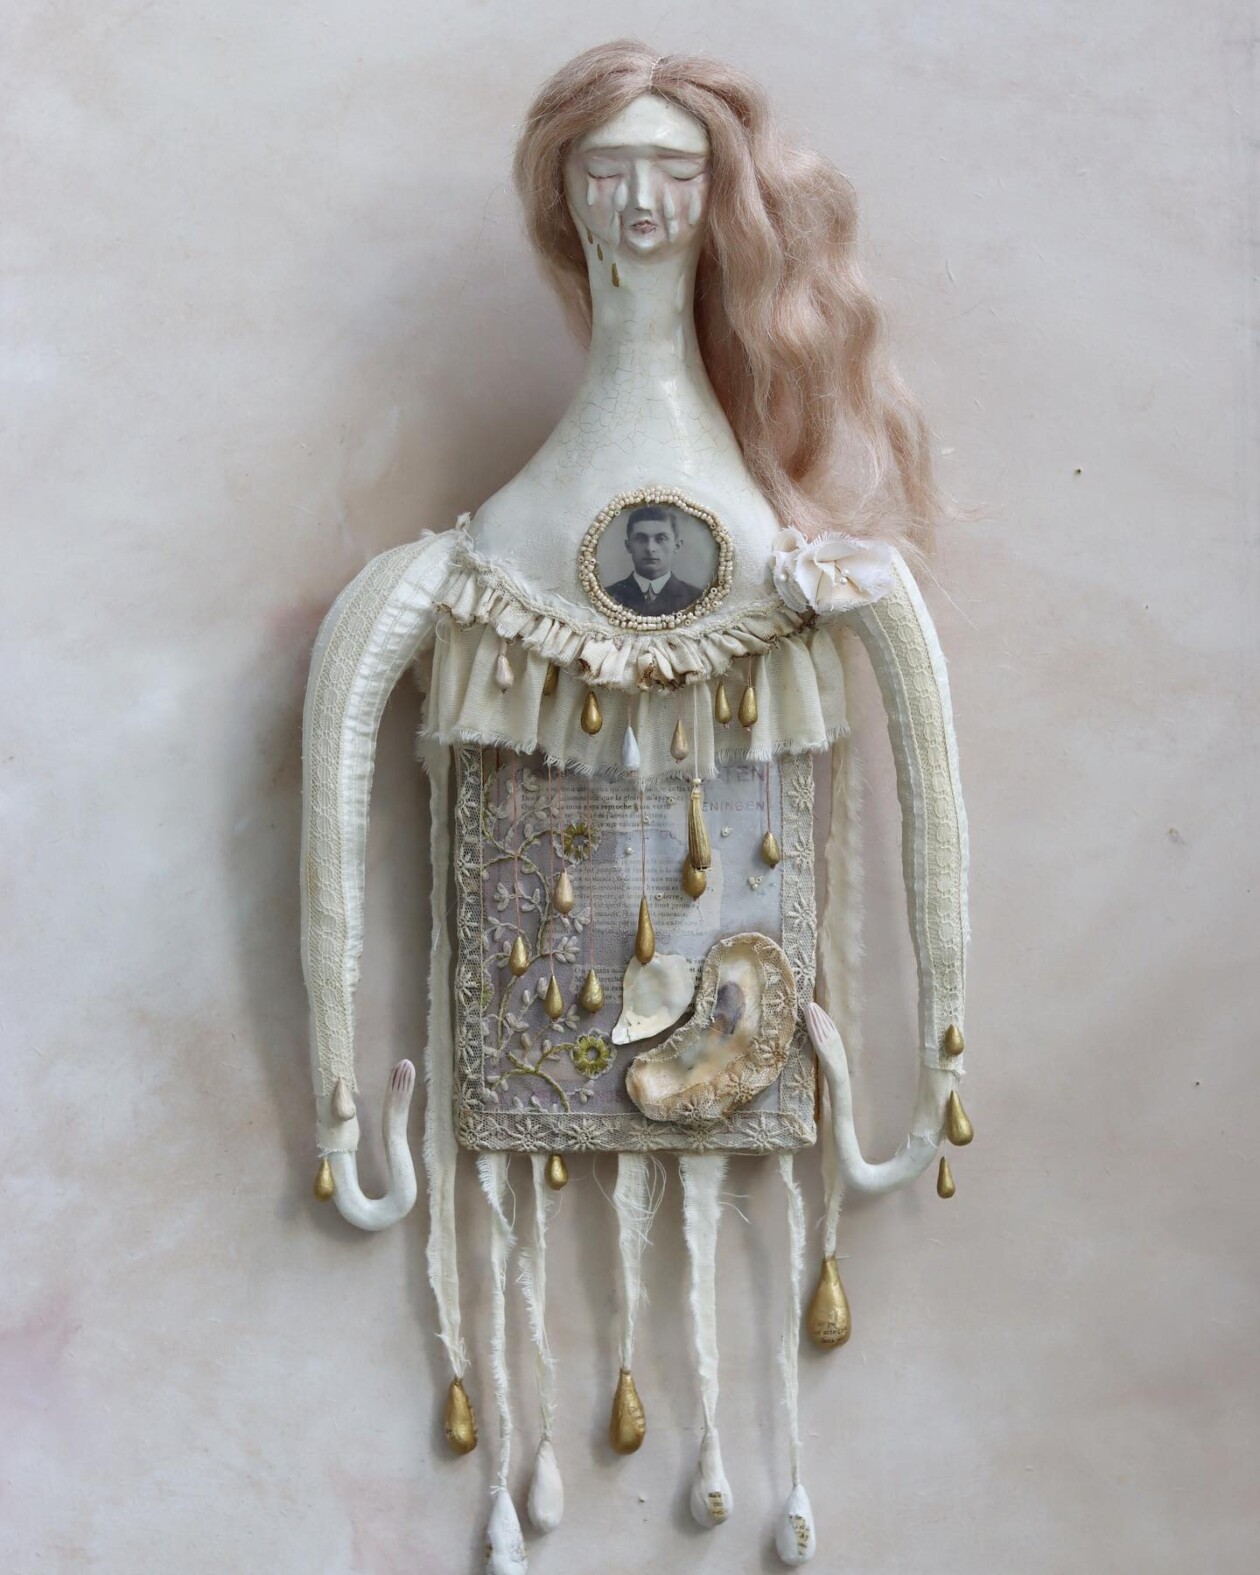 Magical Textile Dolls By Anouk De Groot (19)